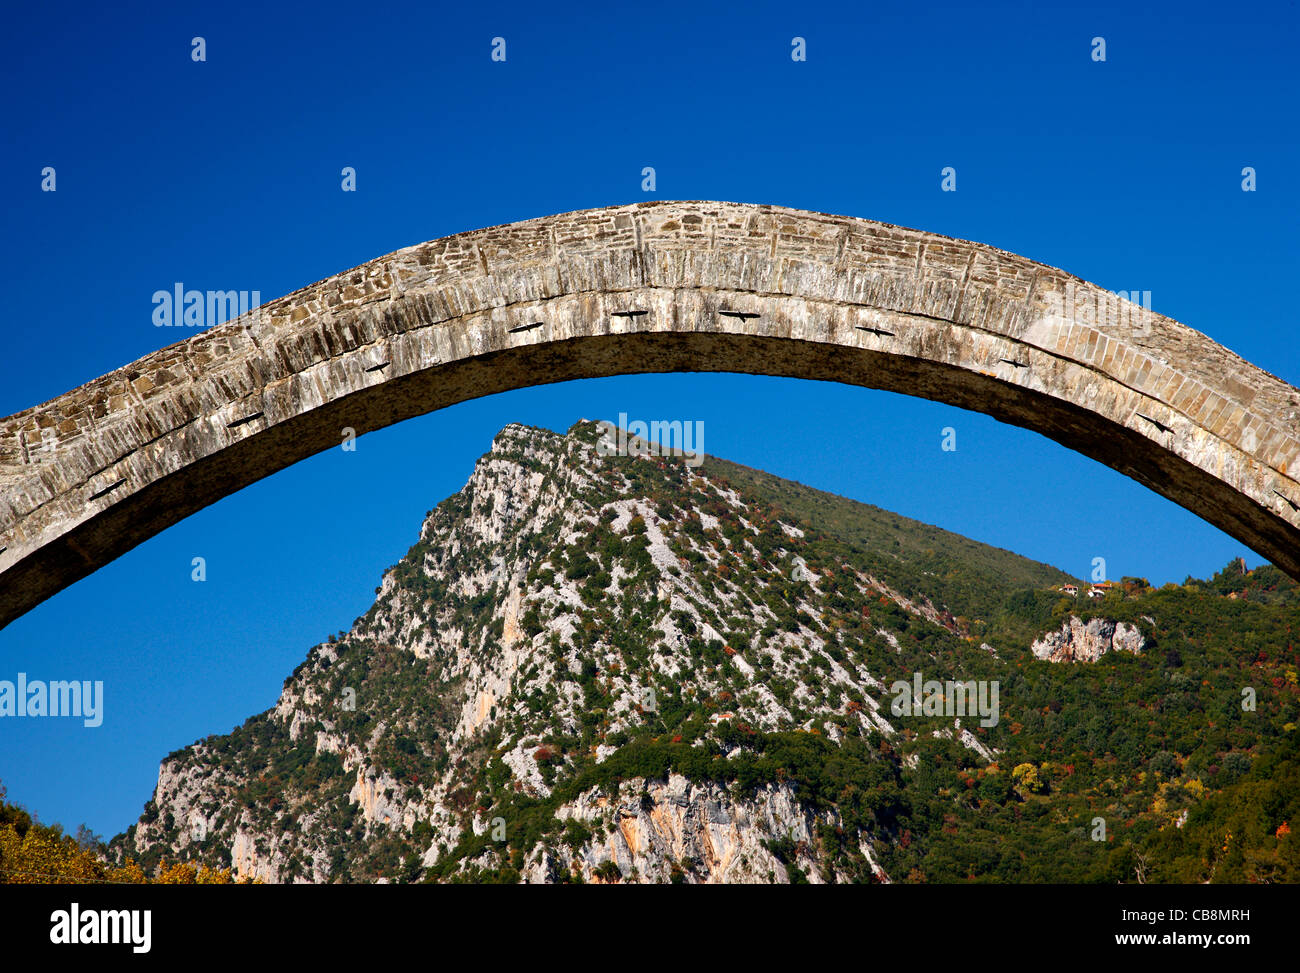 Plaka (oder "Plakas") Brücke, die größte Single-gewölbte steinerne Brücke auf dem Balkan, Arachtos Fluss, Ioannina, Griechenland Stockfoto